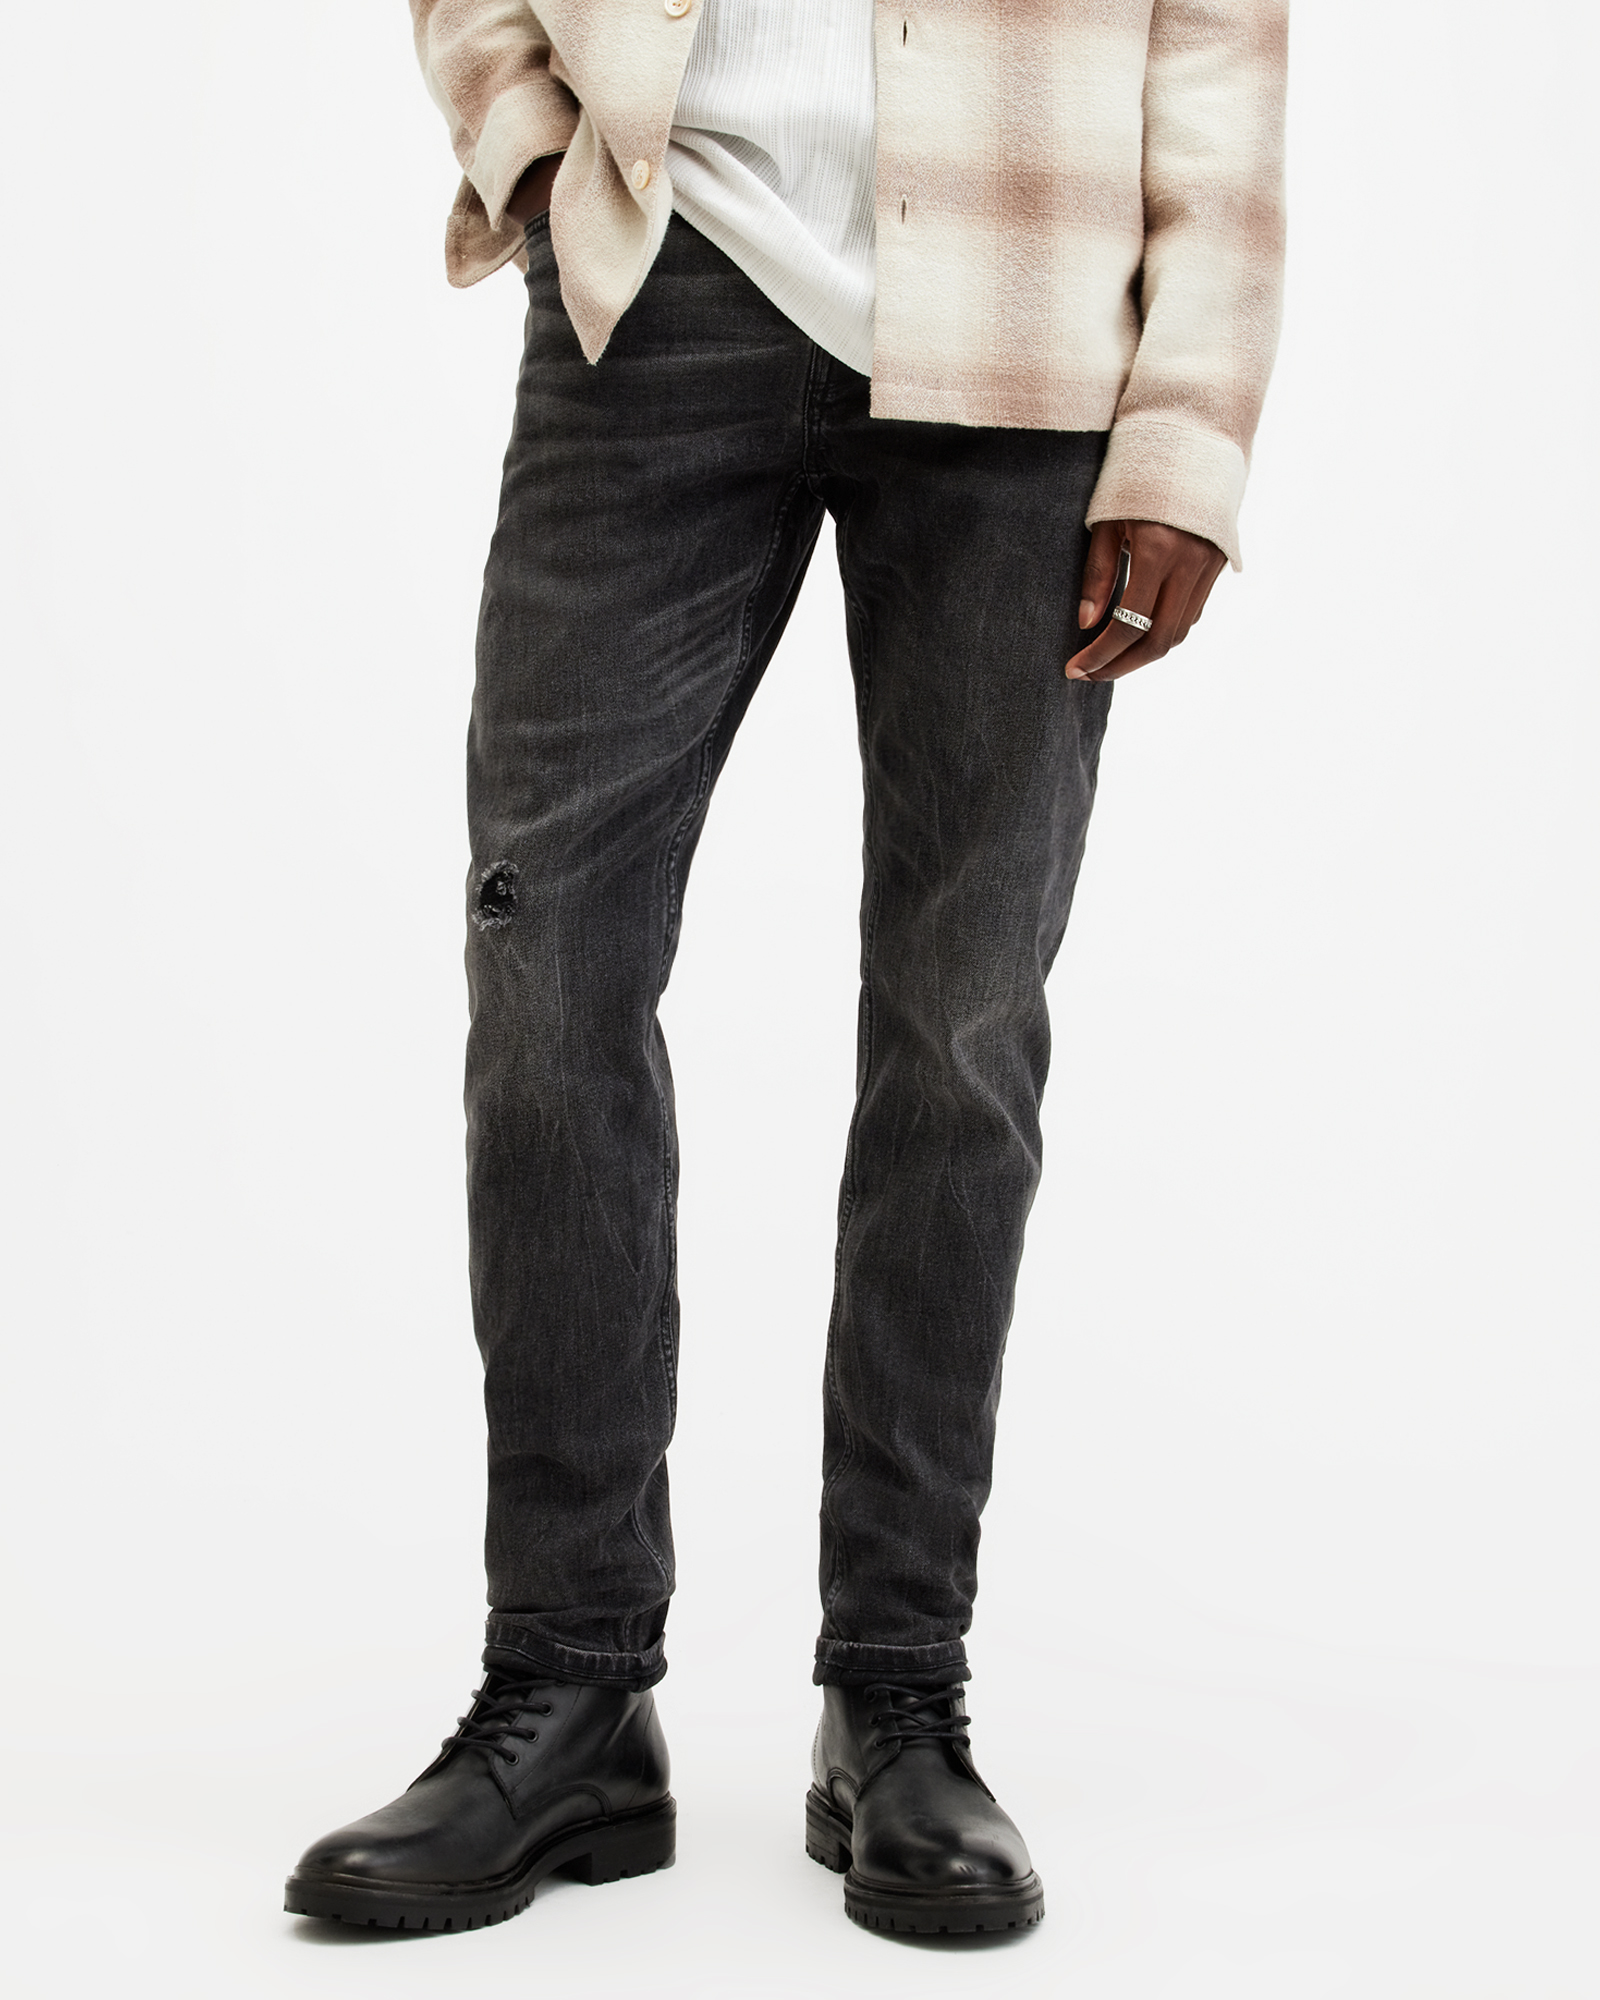 AllSaints Men's Cotton Traditional Rex Slim Jeans, Black, Size: 34/L32